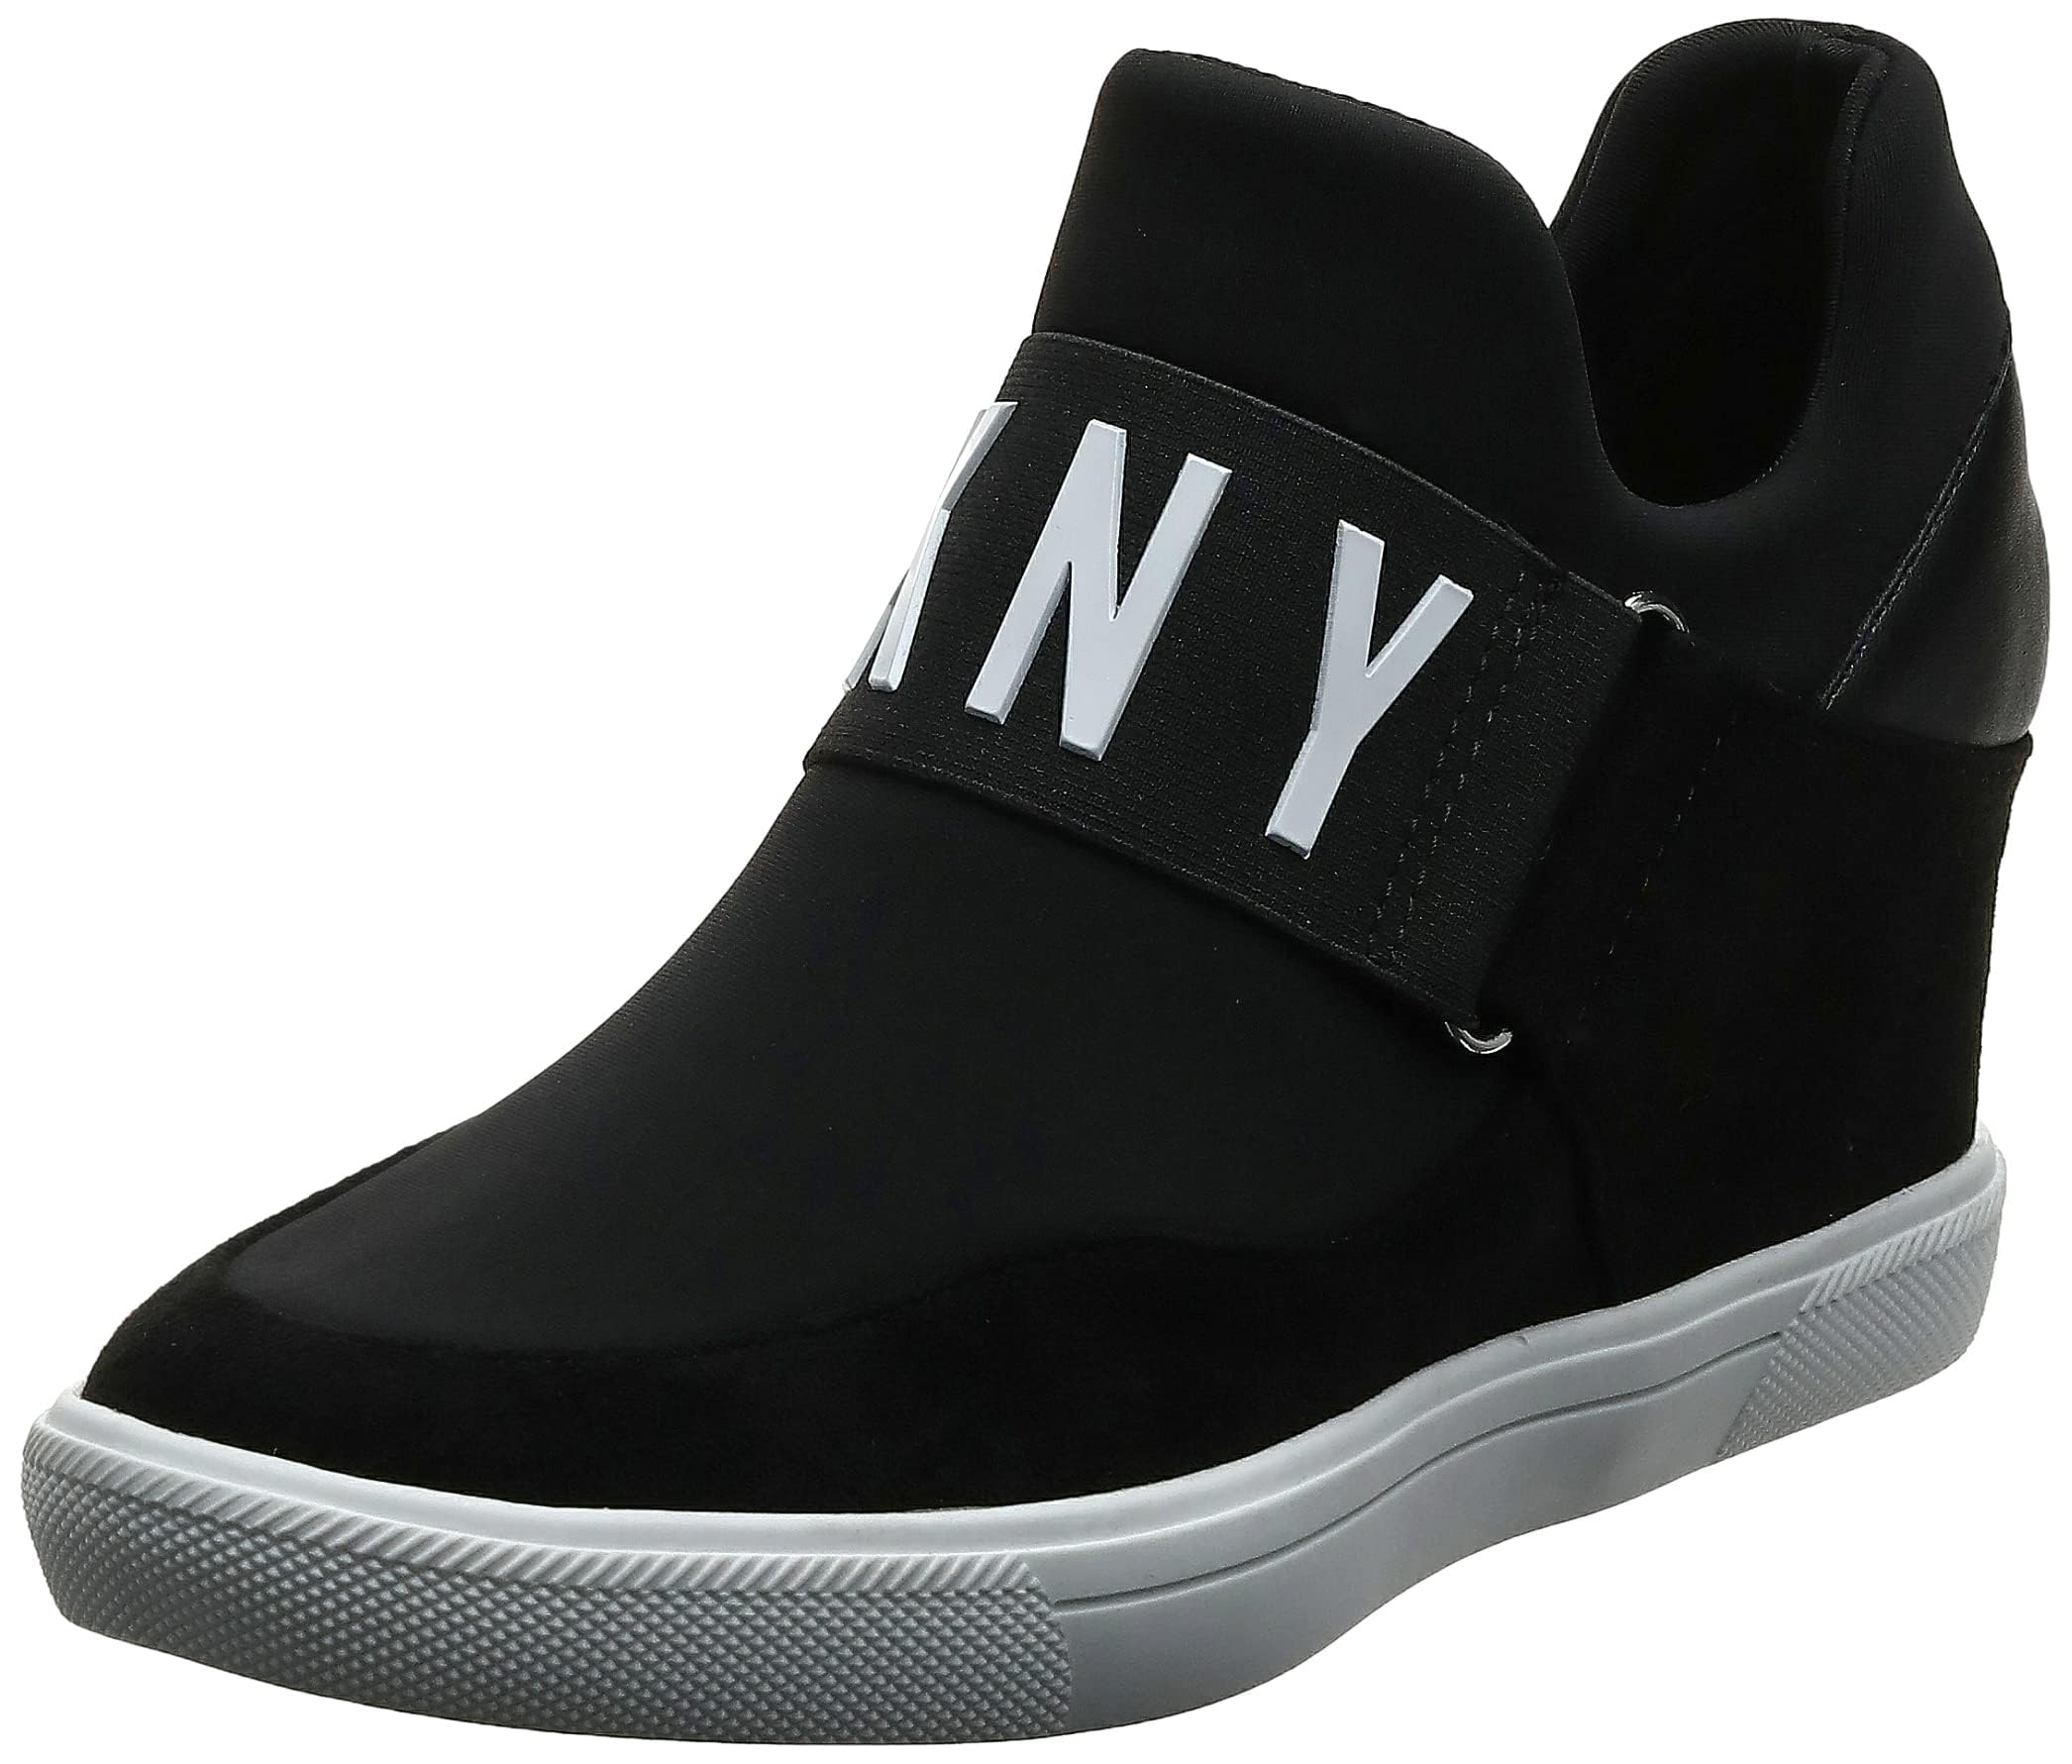 DKNY Women's Footwear COSMOS - WEDGE SNEAKER,BLACK, 9